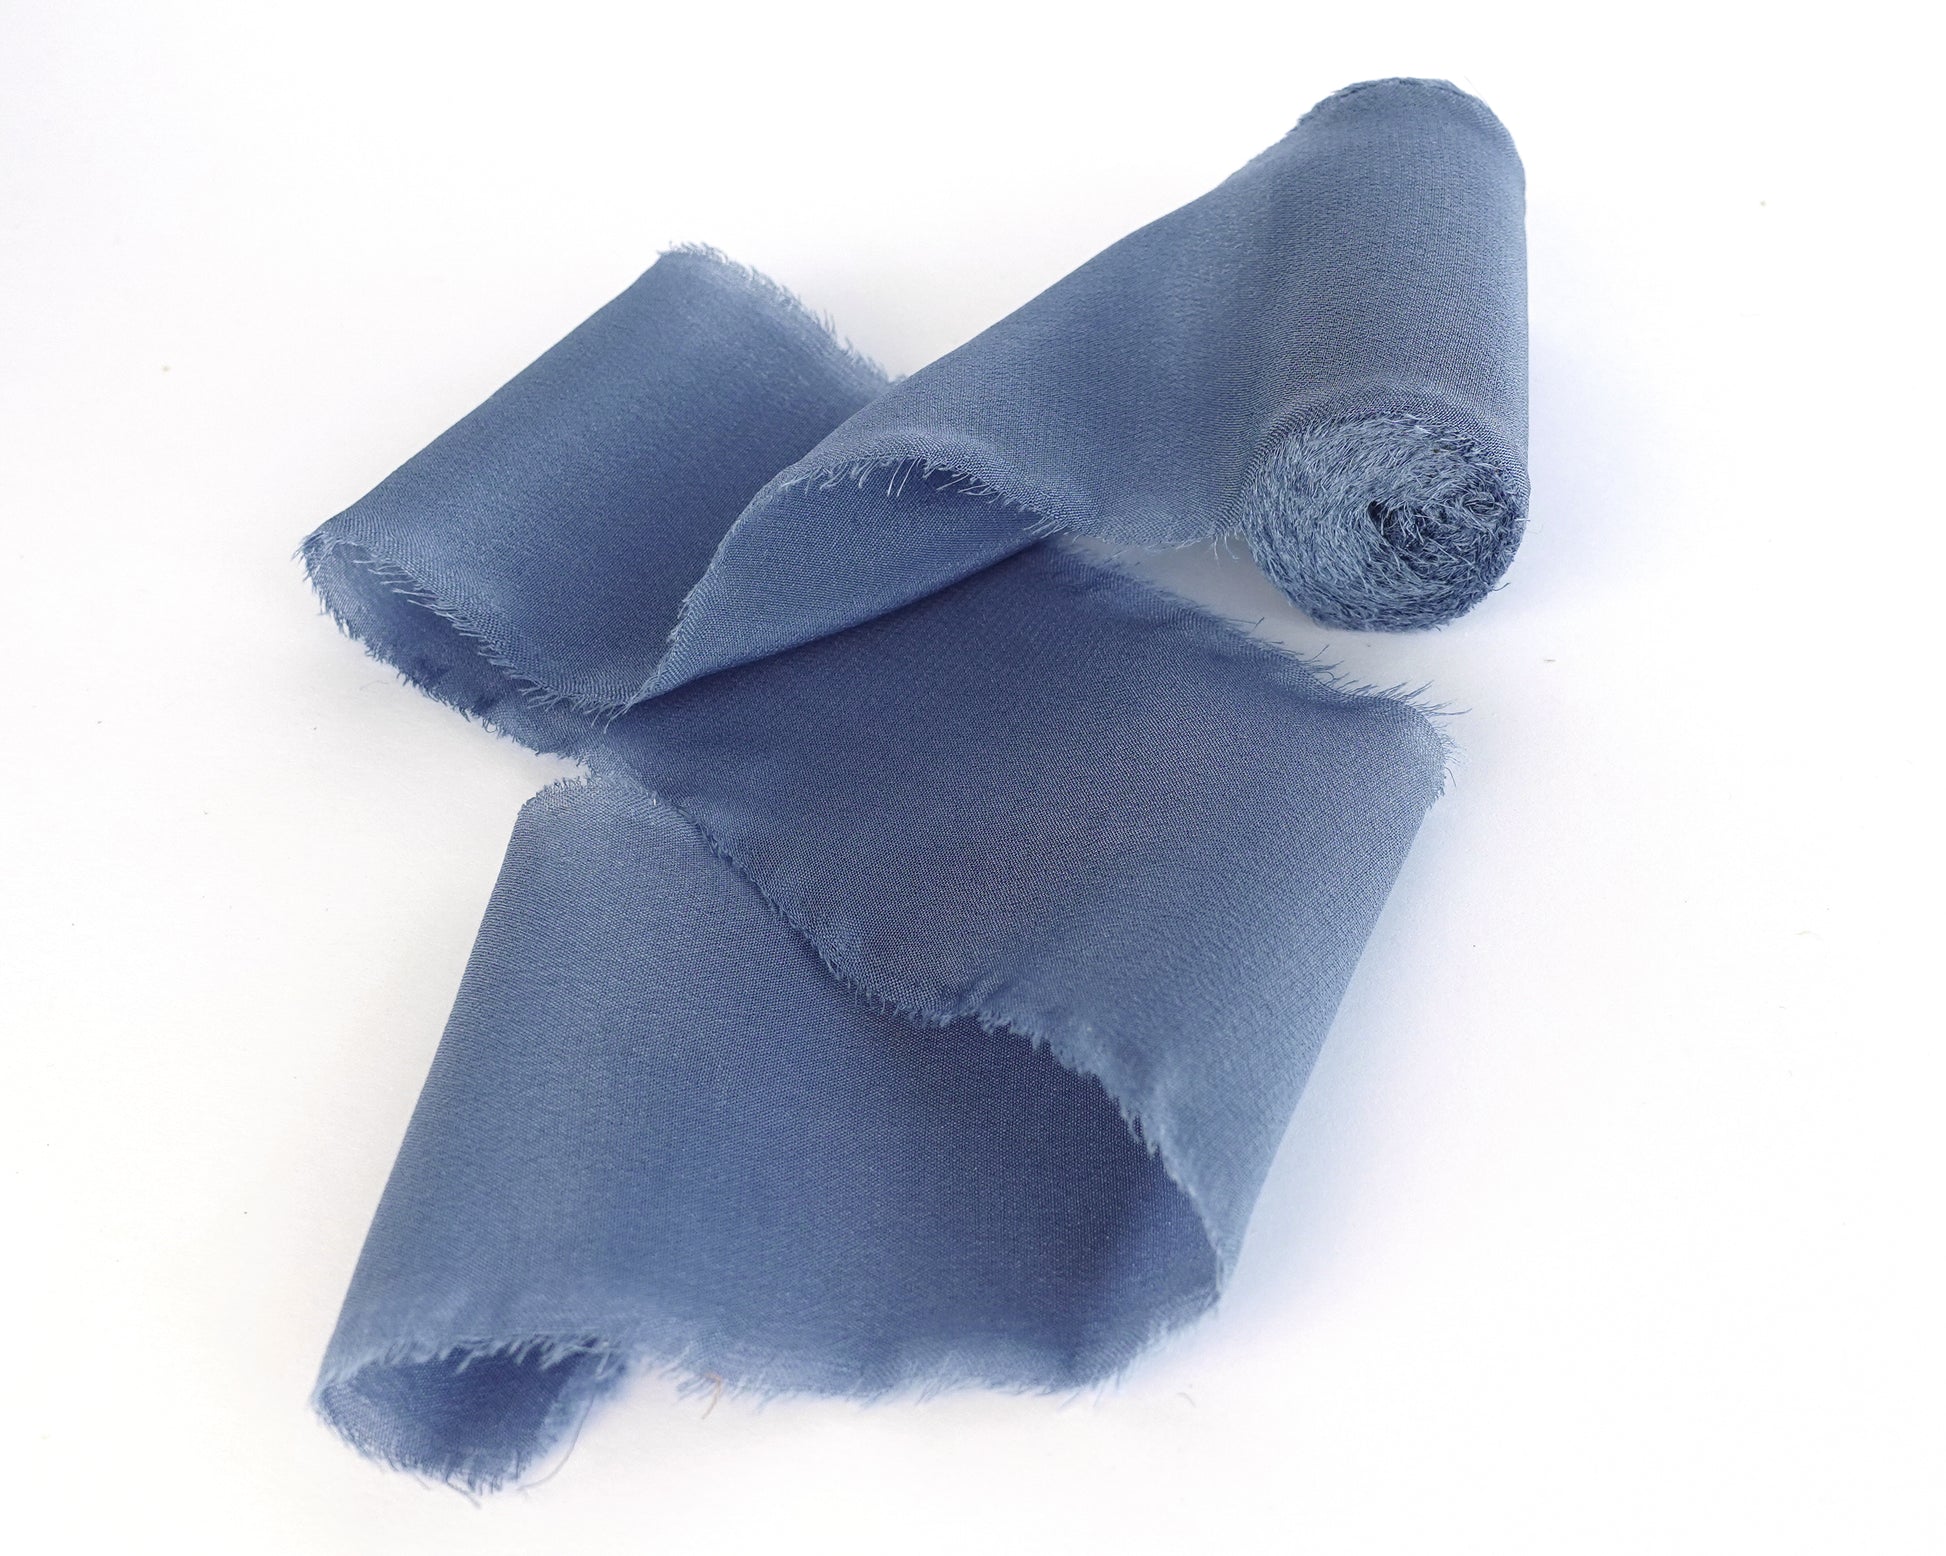  JEDIA Dusty Blue Ribbon, 3 Rolls Chiffon Silk Ribbons